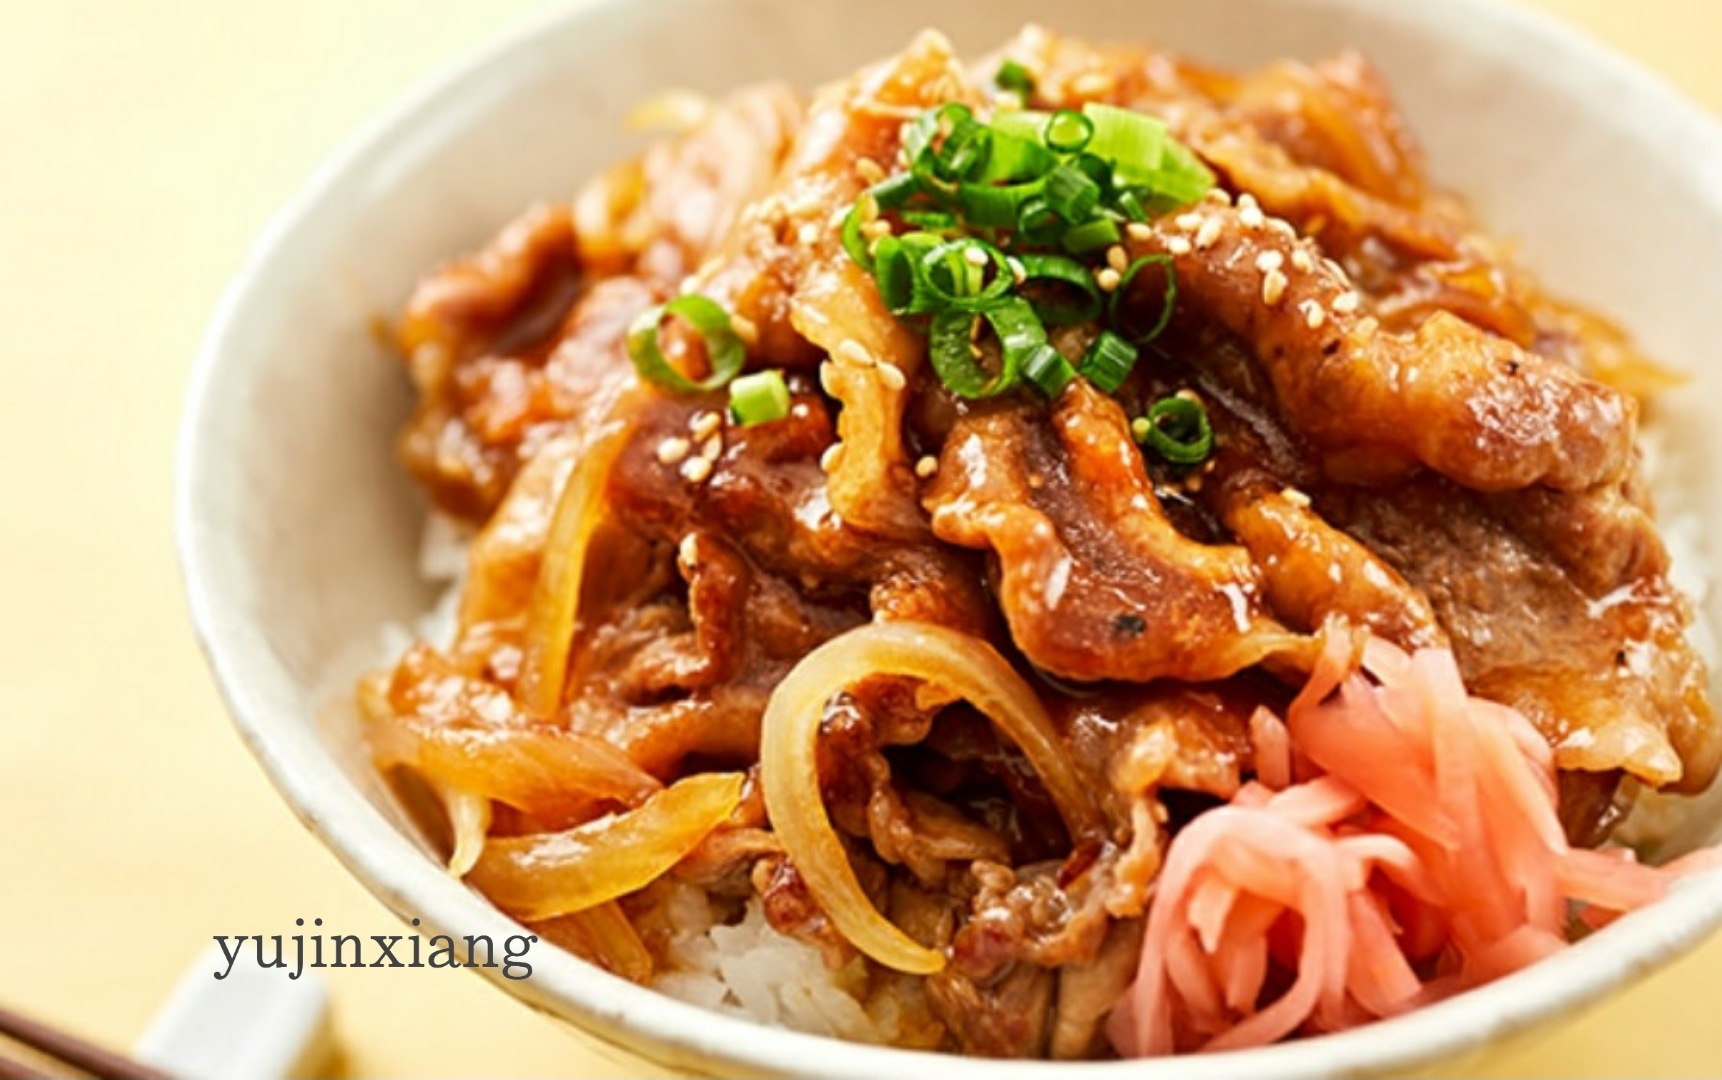 日本家庭料理 豚丼 猪肉盖饭 的做法步骤图 郁金香的日式养生馆 下厨房